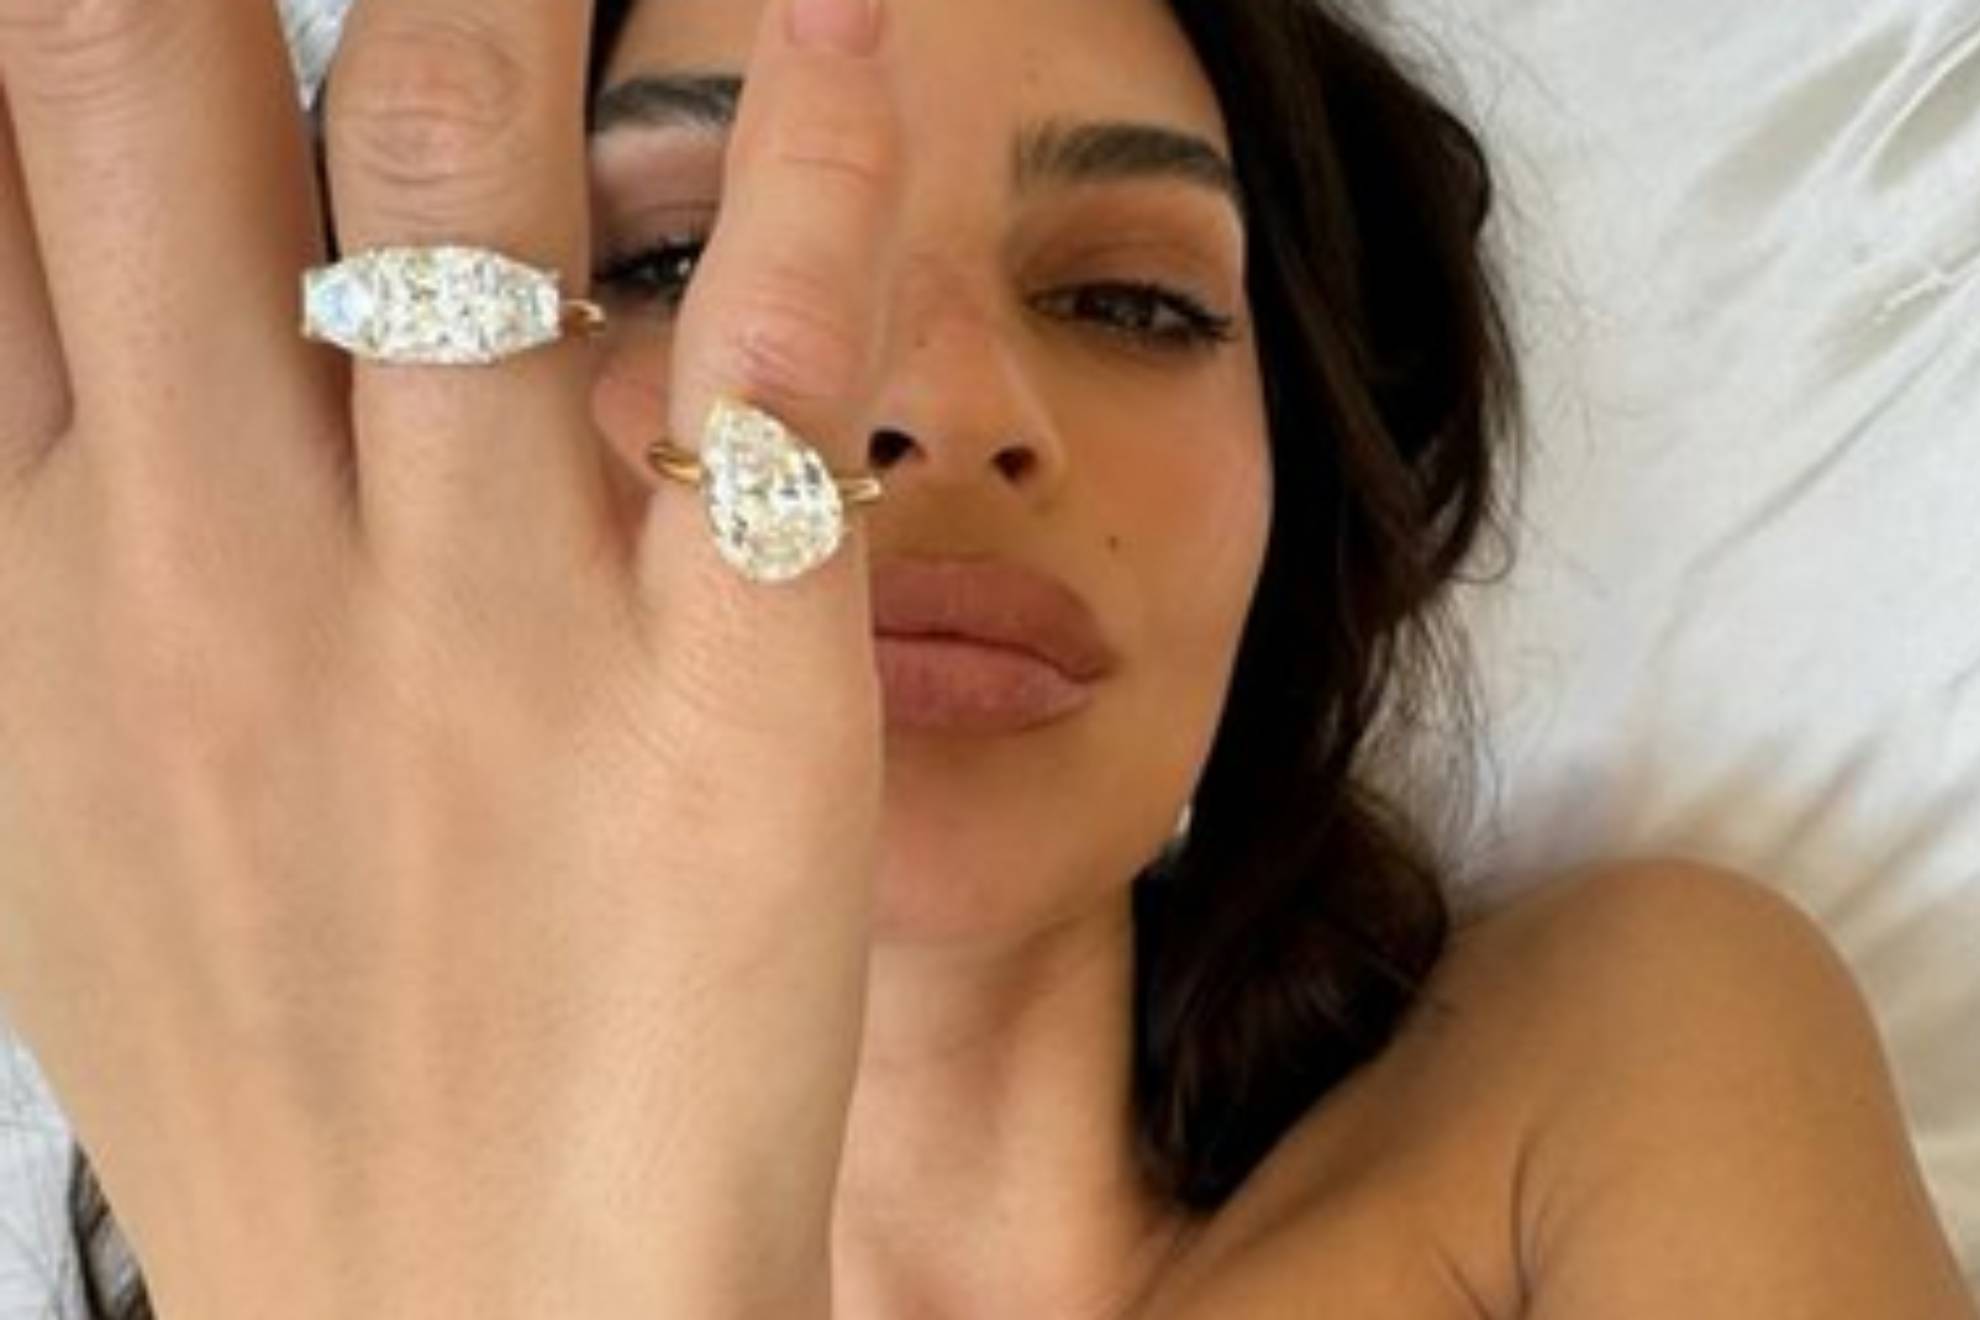 Emily Ratajkowski comparti con sus ms de 30 millones de seguidores en Instagram lo que la famosa modelo ha bautizado como anillos de divorcio. Emily present en la cama el anillo de compromiso original de dos piedras que marc tendencia de Alison Lou.